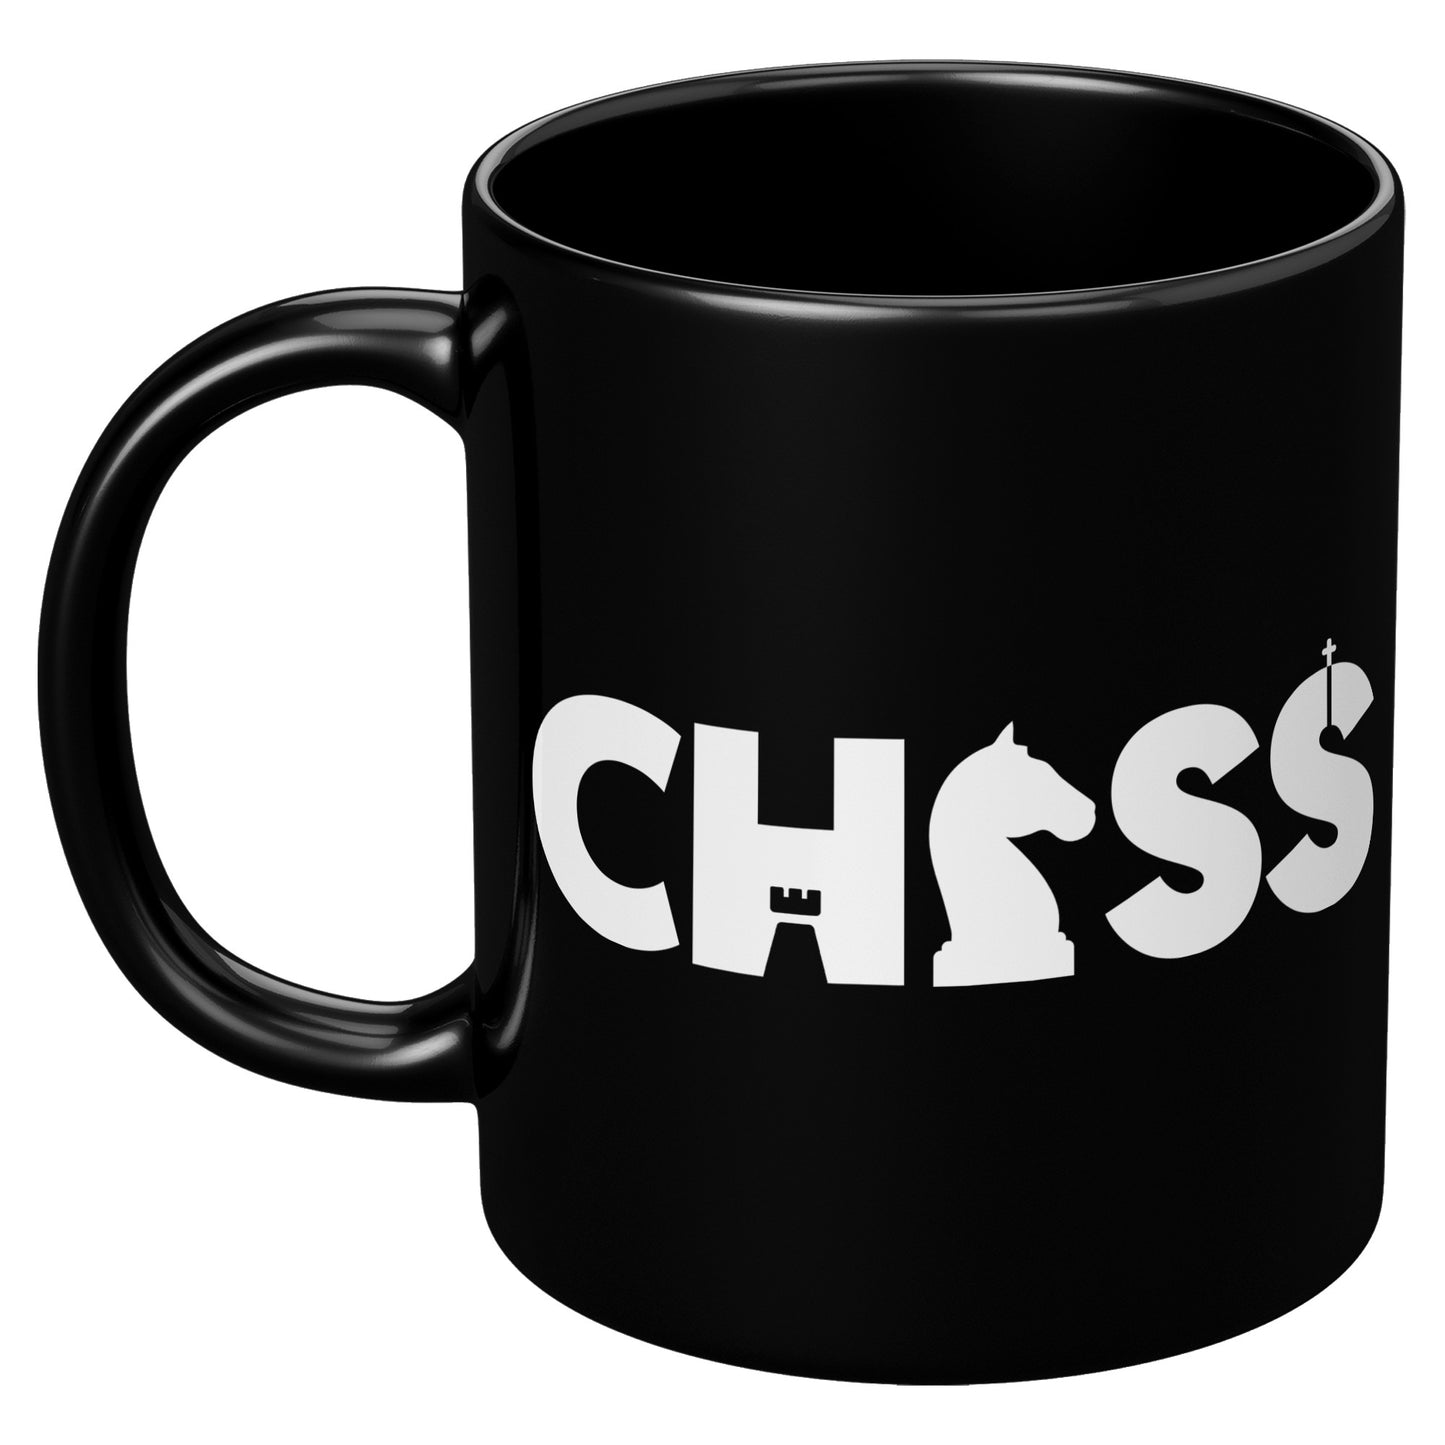 Chess Lover's Mug.